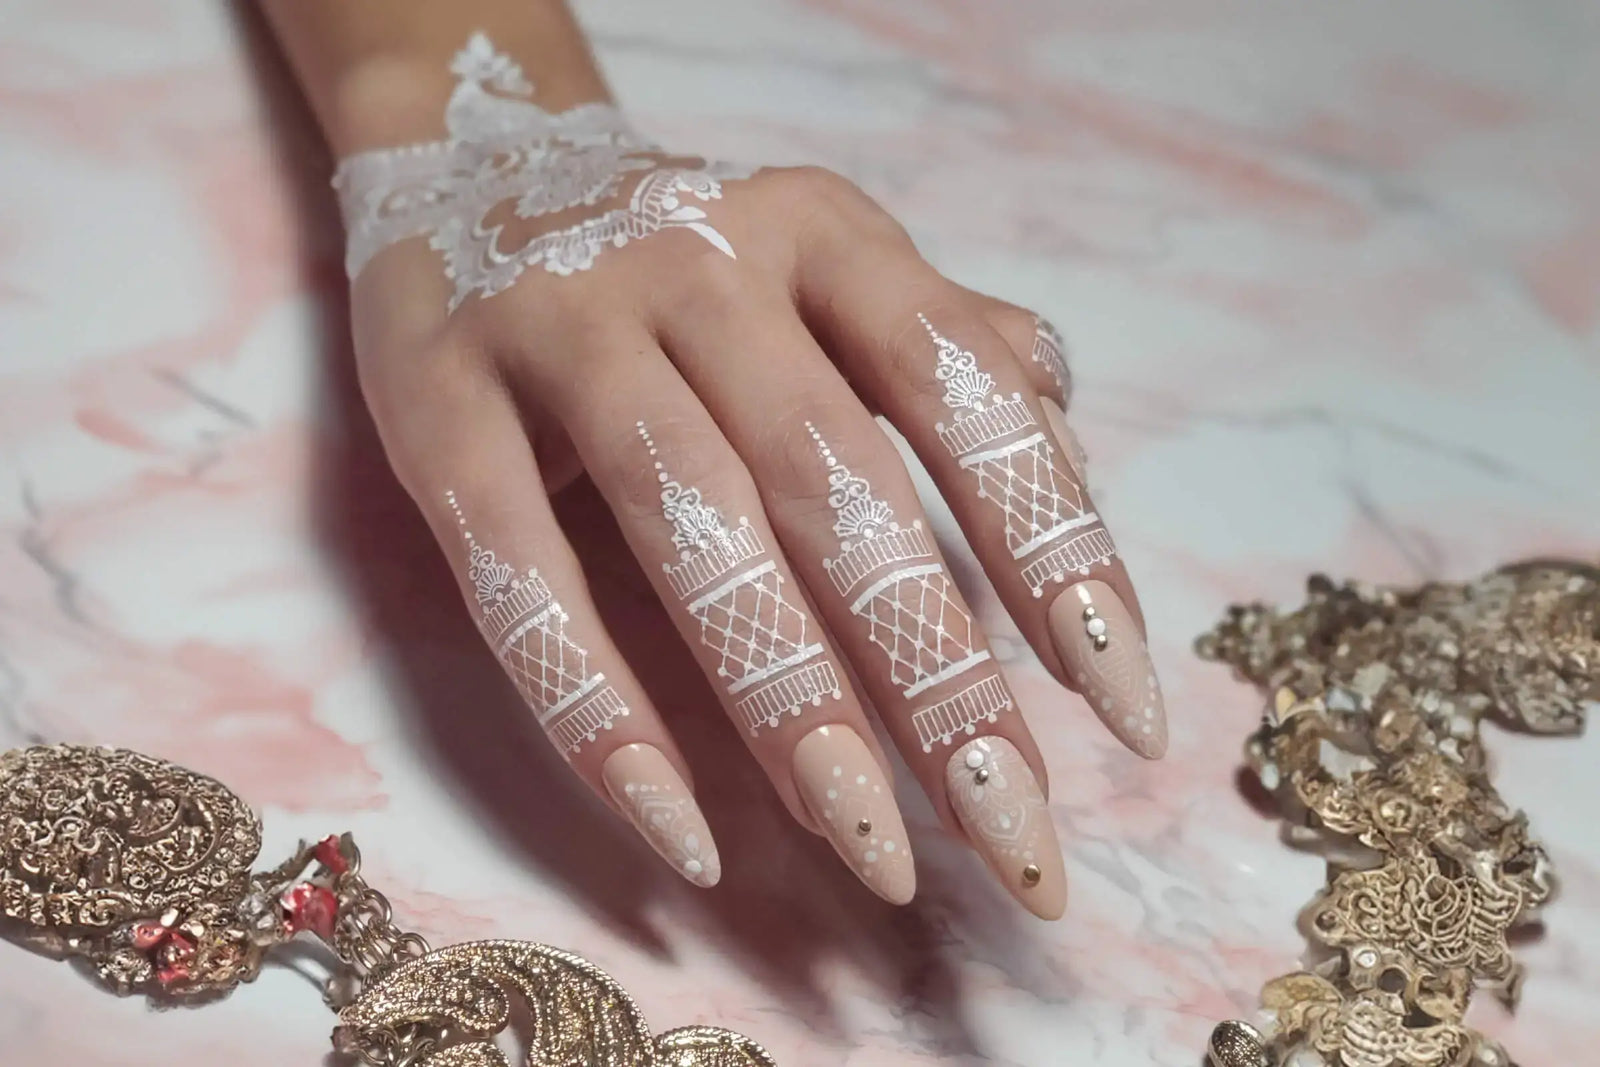 CND Bridal Lookbook You Had Me at Henna Nail Art by Tamara Di Lullo